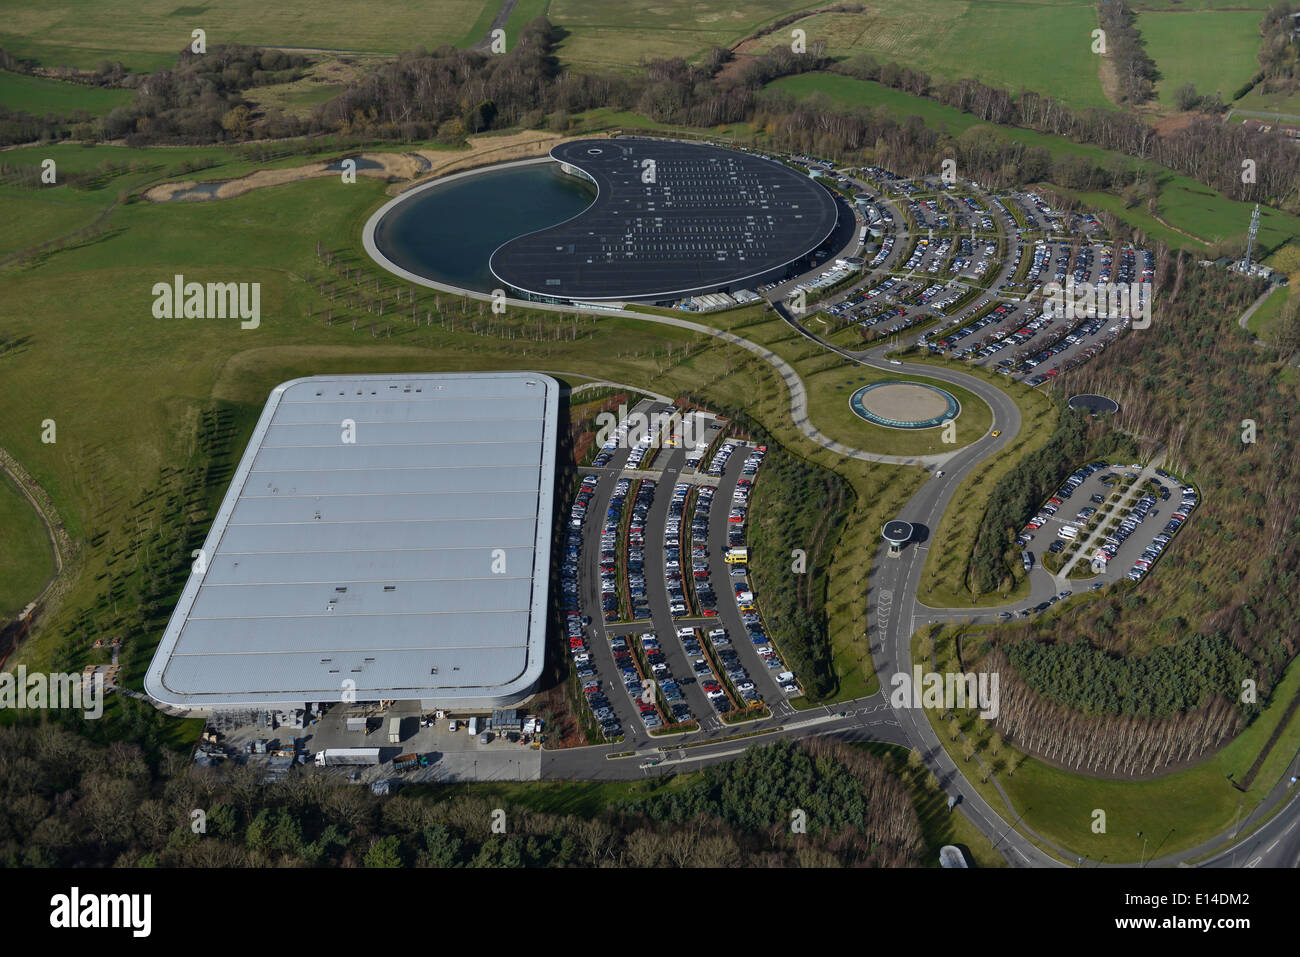 Une vue aérienne du centre technique Mclaren près de Woking UK Banque D'Images